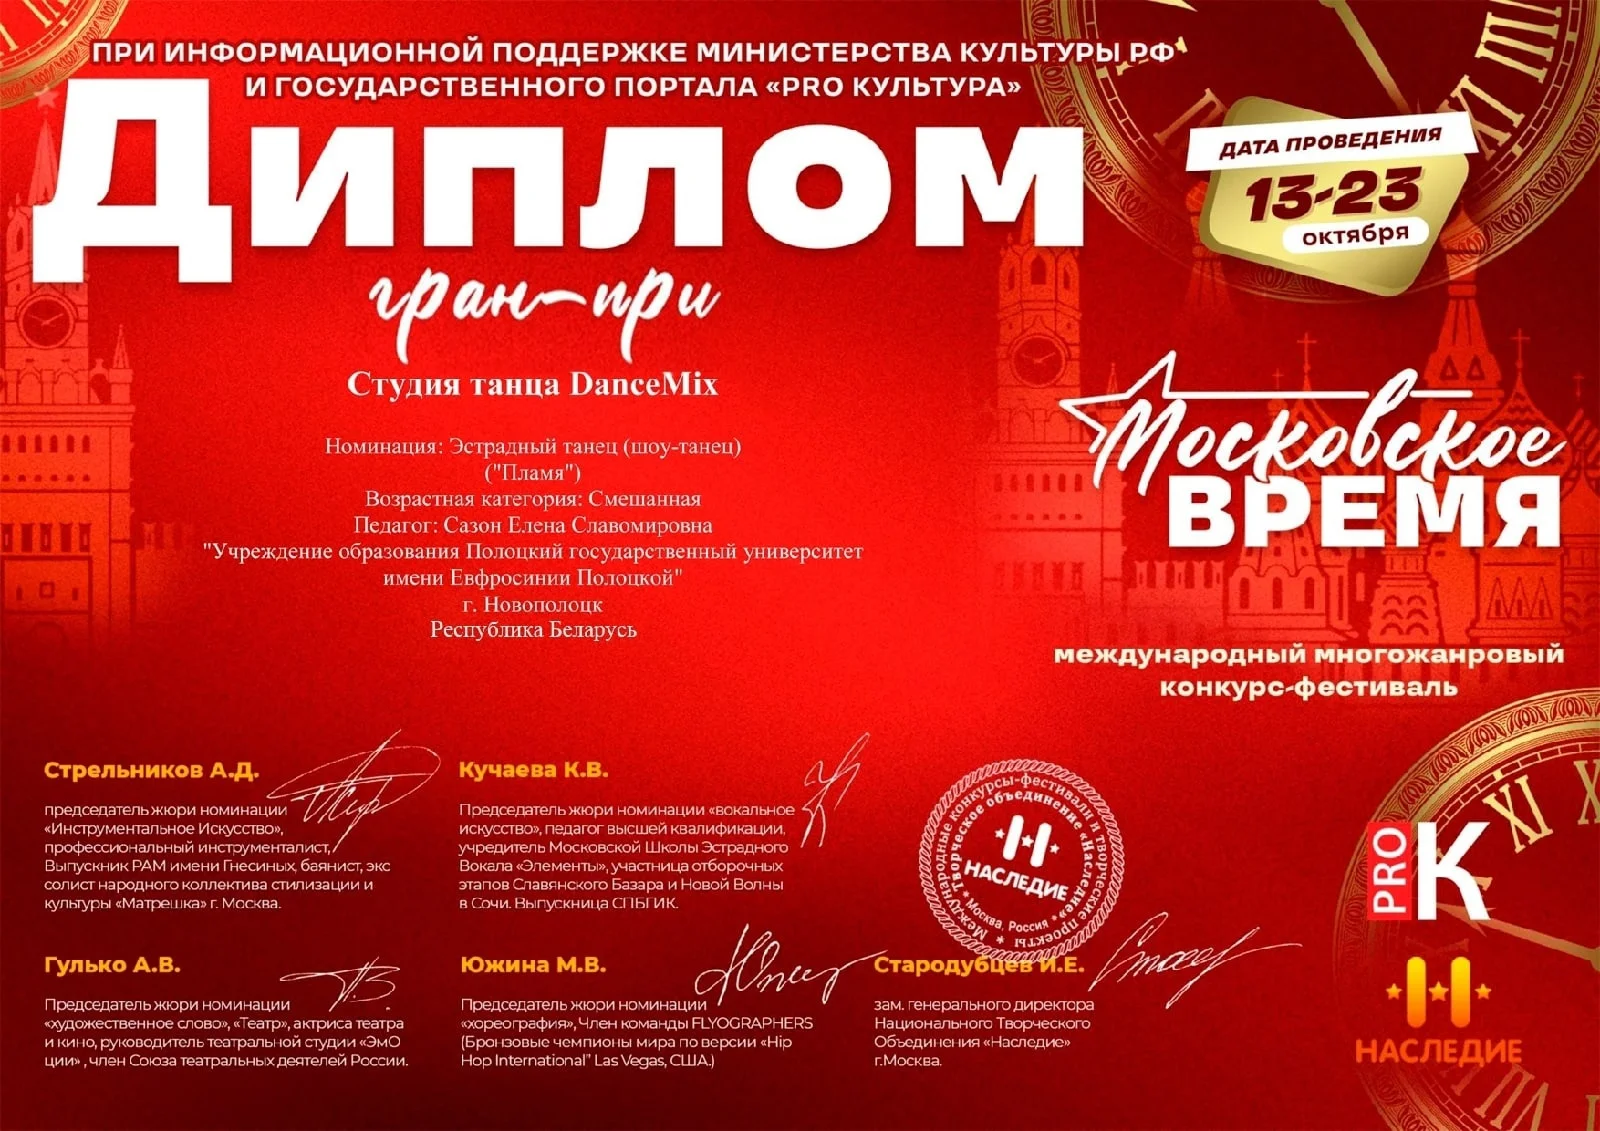 Международный многожанровый конкурс-фестиваль «Московское время»